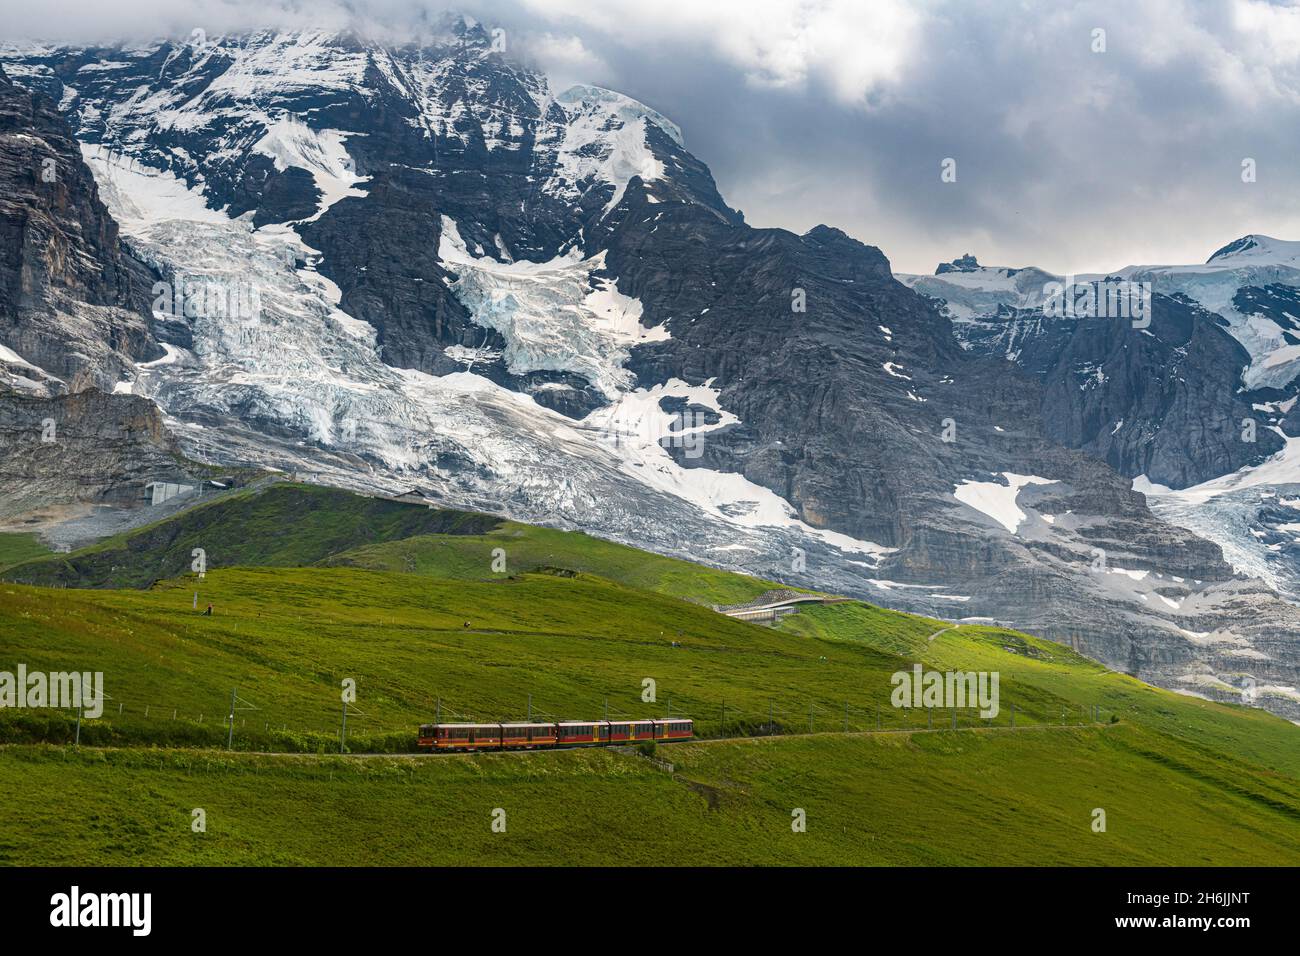 The Jungfrau railway below the Eiger North Face, Kleine Scheidegg, Bernese Oberland, Switzerland, Europe Stock Photo